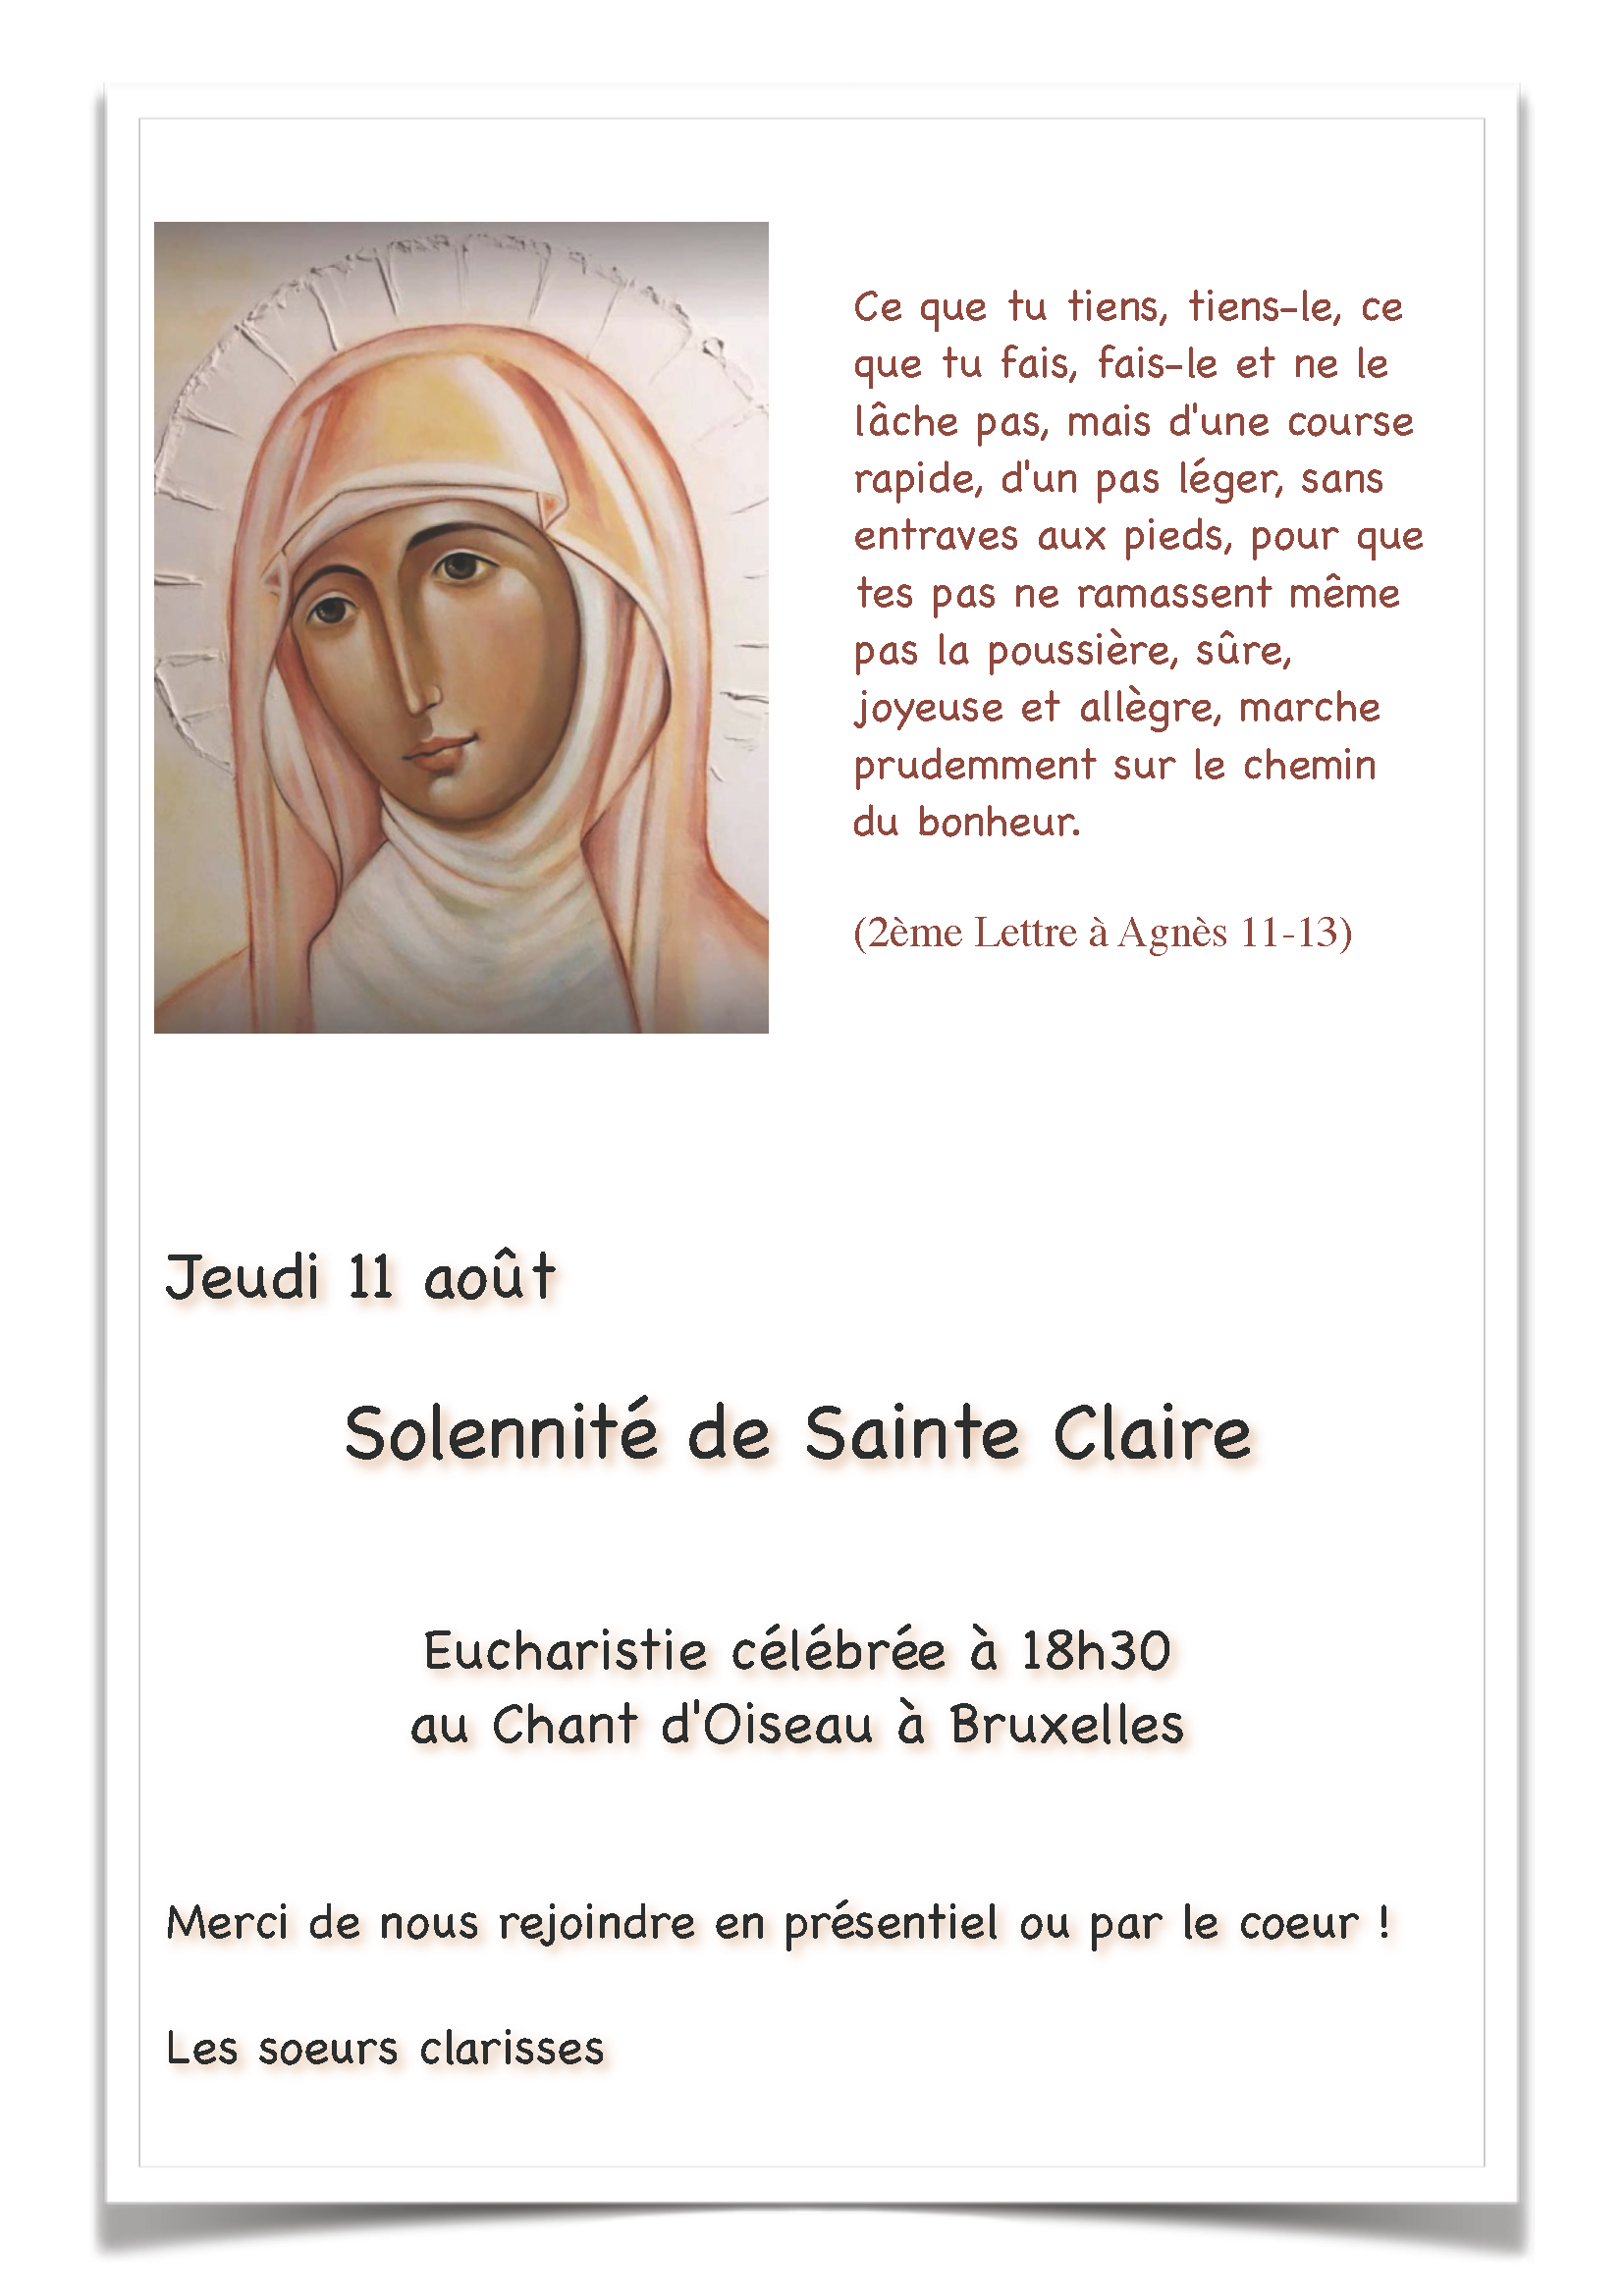 Solennité de Sainte Claire